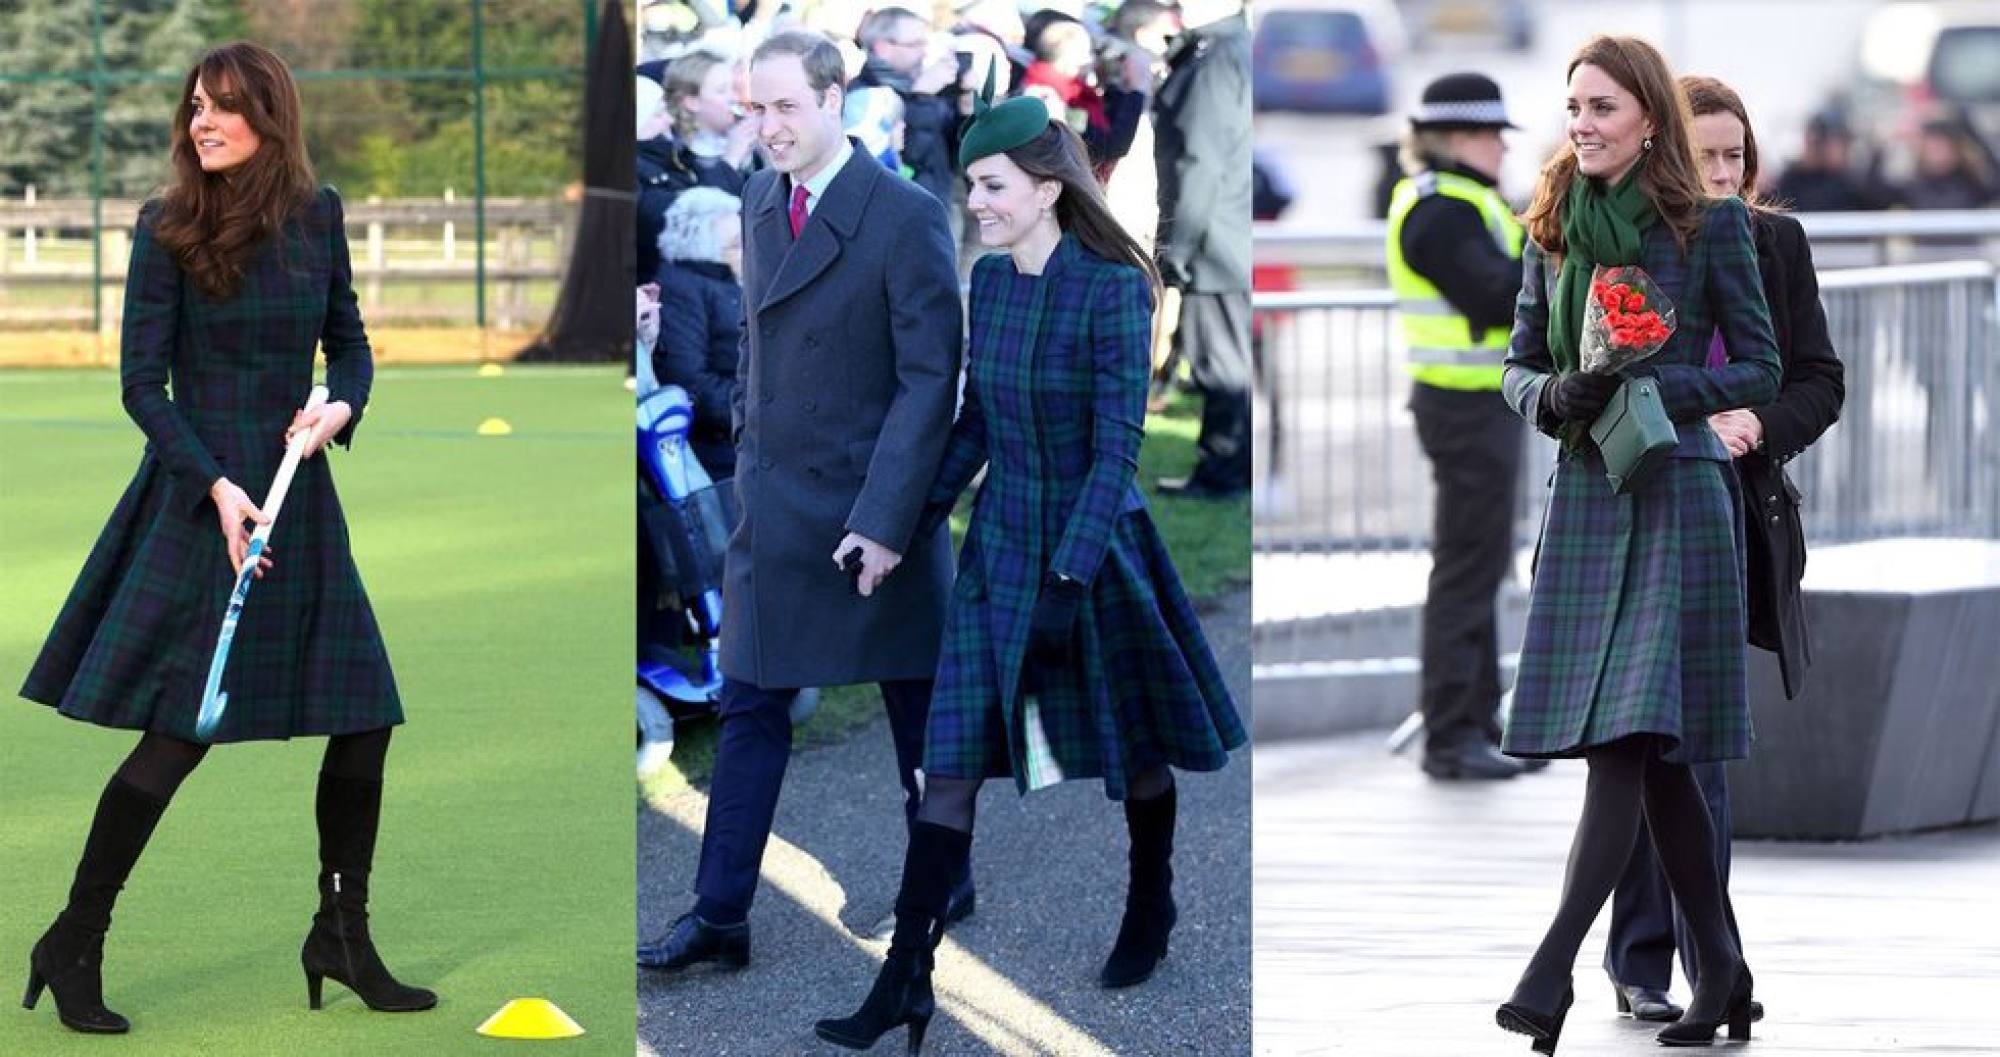 Middleton tiếp tục thể hiện tình cảm với Alexander McQueen bằng cách diện lại chiếc váy xanh kẻ sọc caro của nhà mốt cao cấp. Cô đã được nhìn thấy mặc bộ trang phục này ít nhất ba lần - một lần vào năm 2012, một lần nữa vào dịp lễ Giáng sinh năm 2013 và gần đây nhất là vào năm 2019 khi khai trương một bảo tàng ở Scotland.